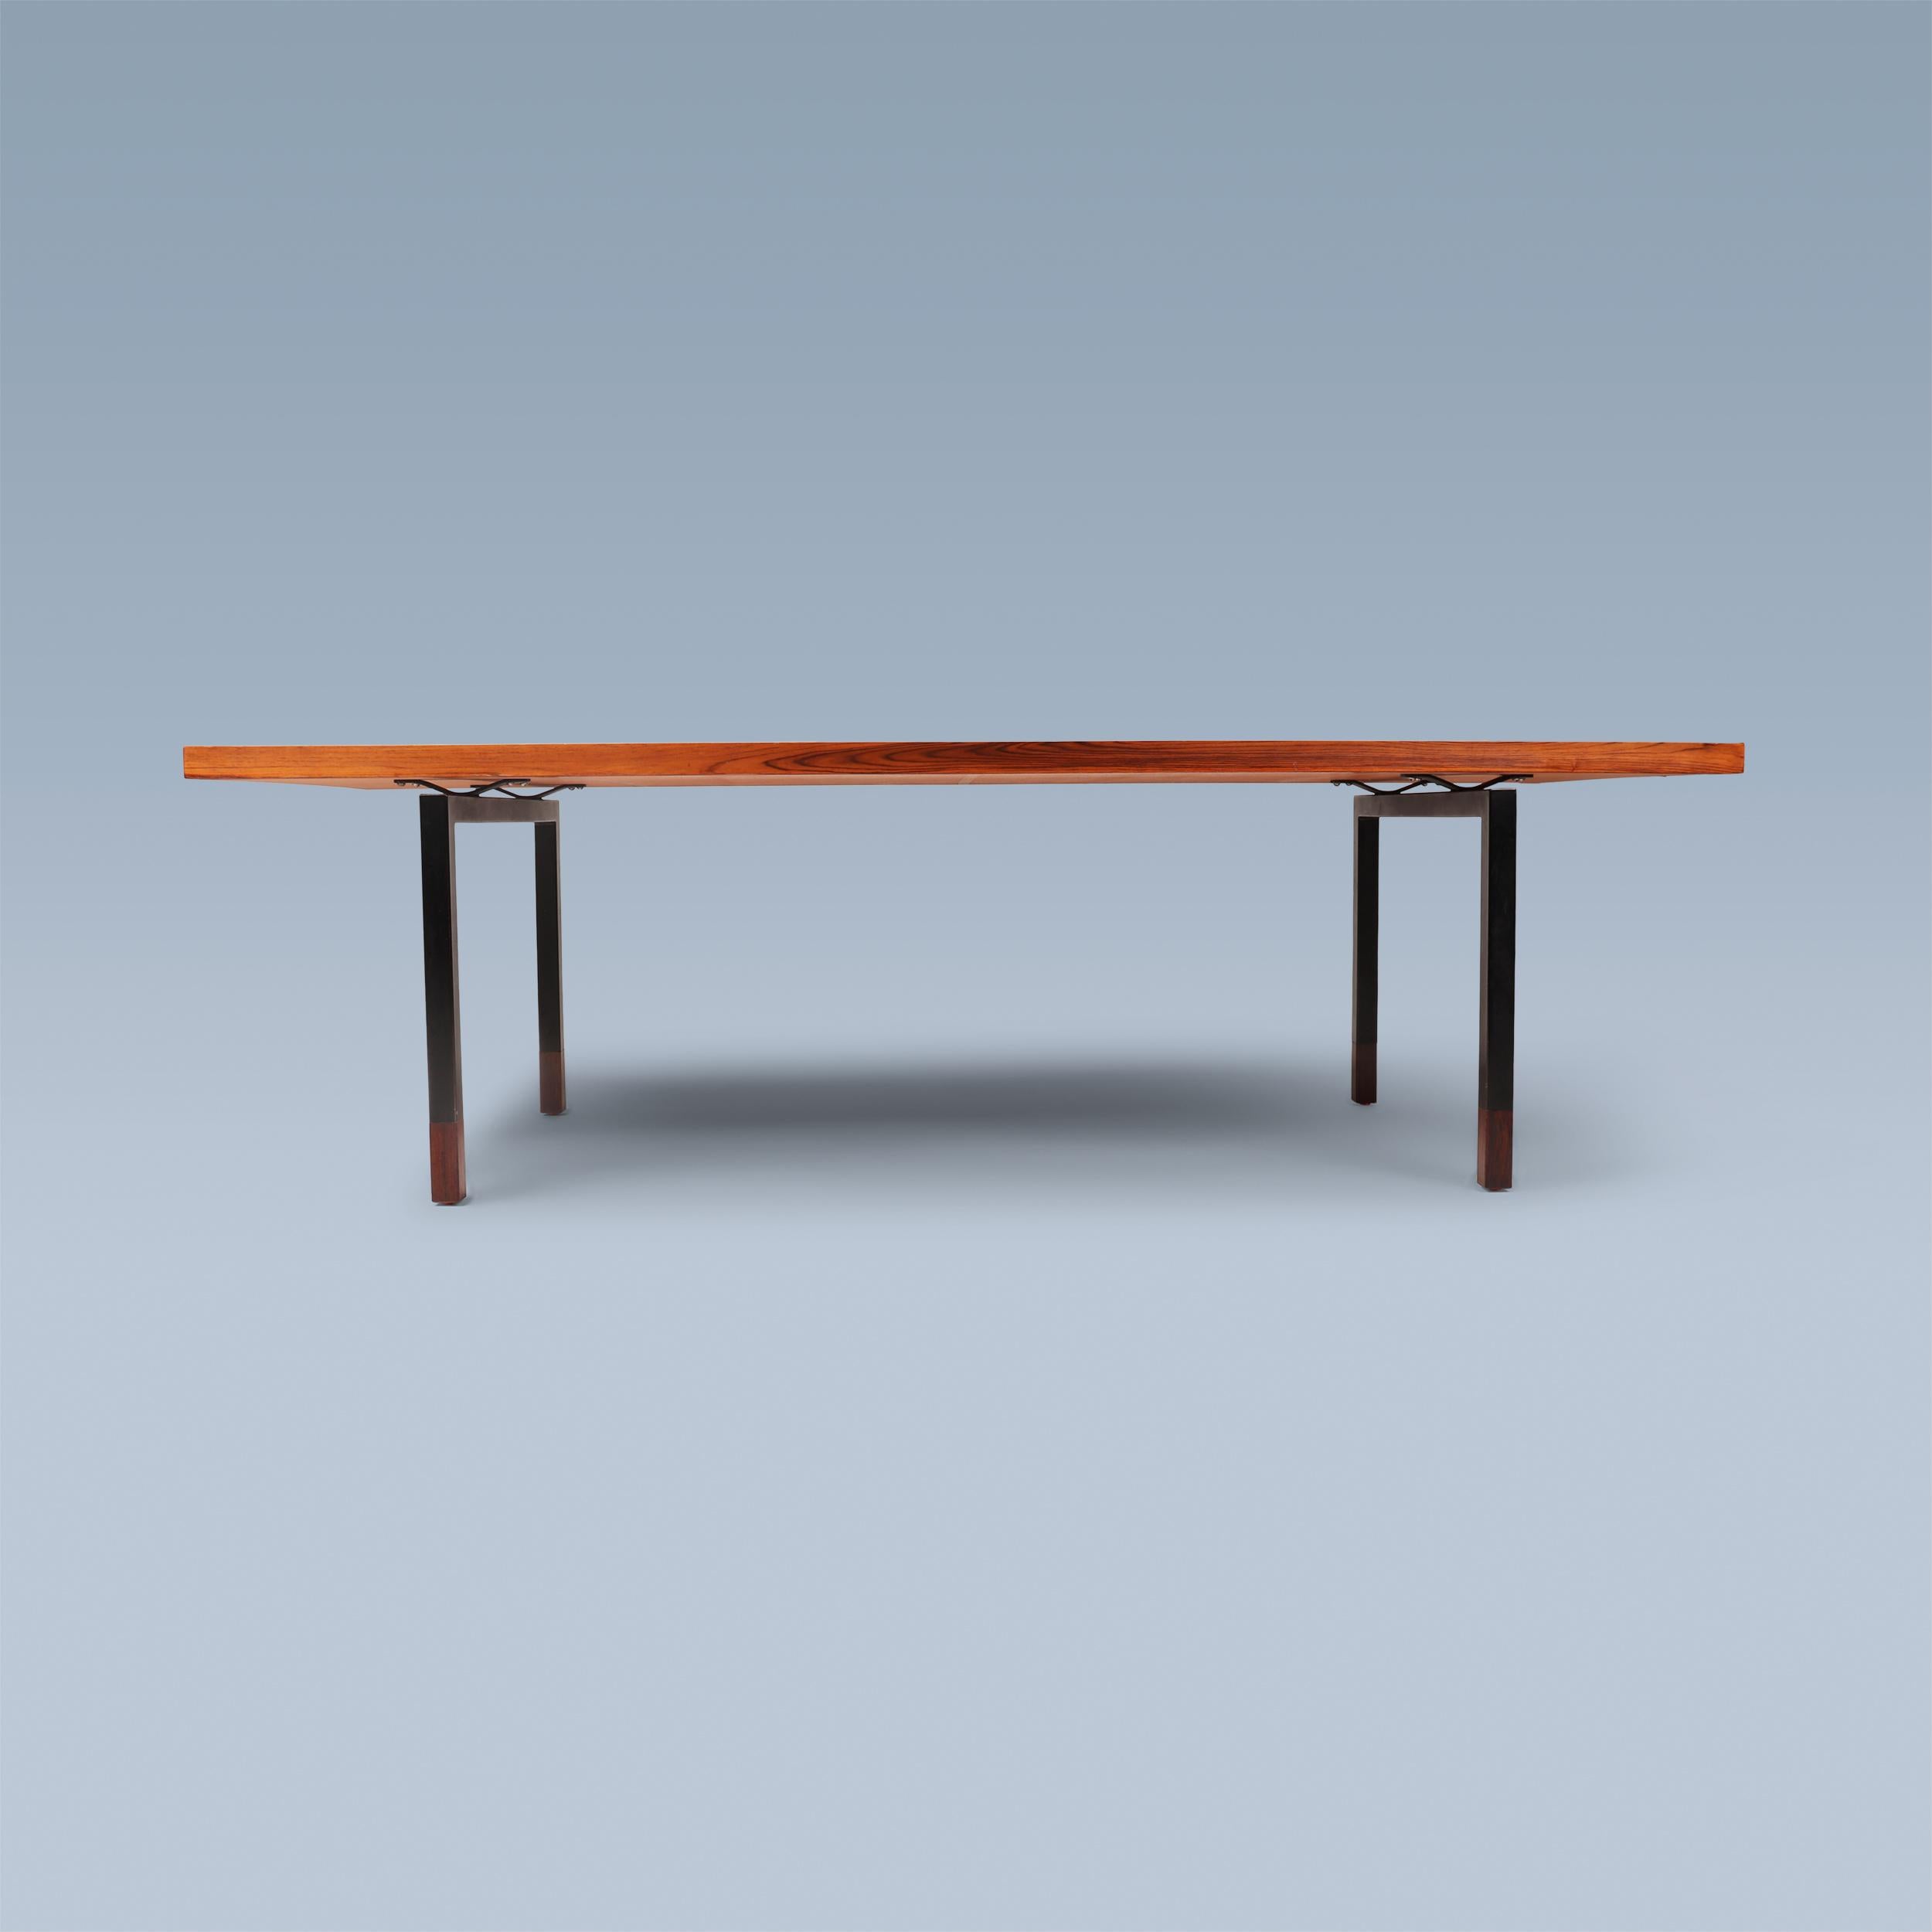 Cette grande table basse colorée a été conçue par Johannes Aasbjerg Andersen (1921-2006) dans les années 1950.
Exécuté par Aasbjerg & Ørtoft sur commande spéciale en 1965.
La table est recouverte de 24 carreaux émaillés décoratifs et uniques, faits